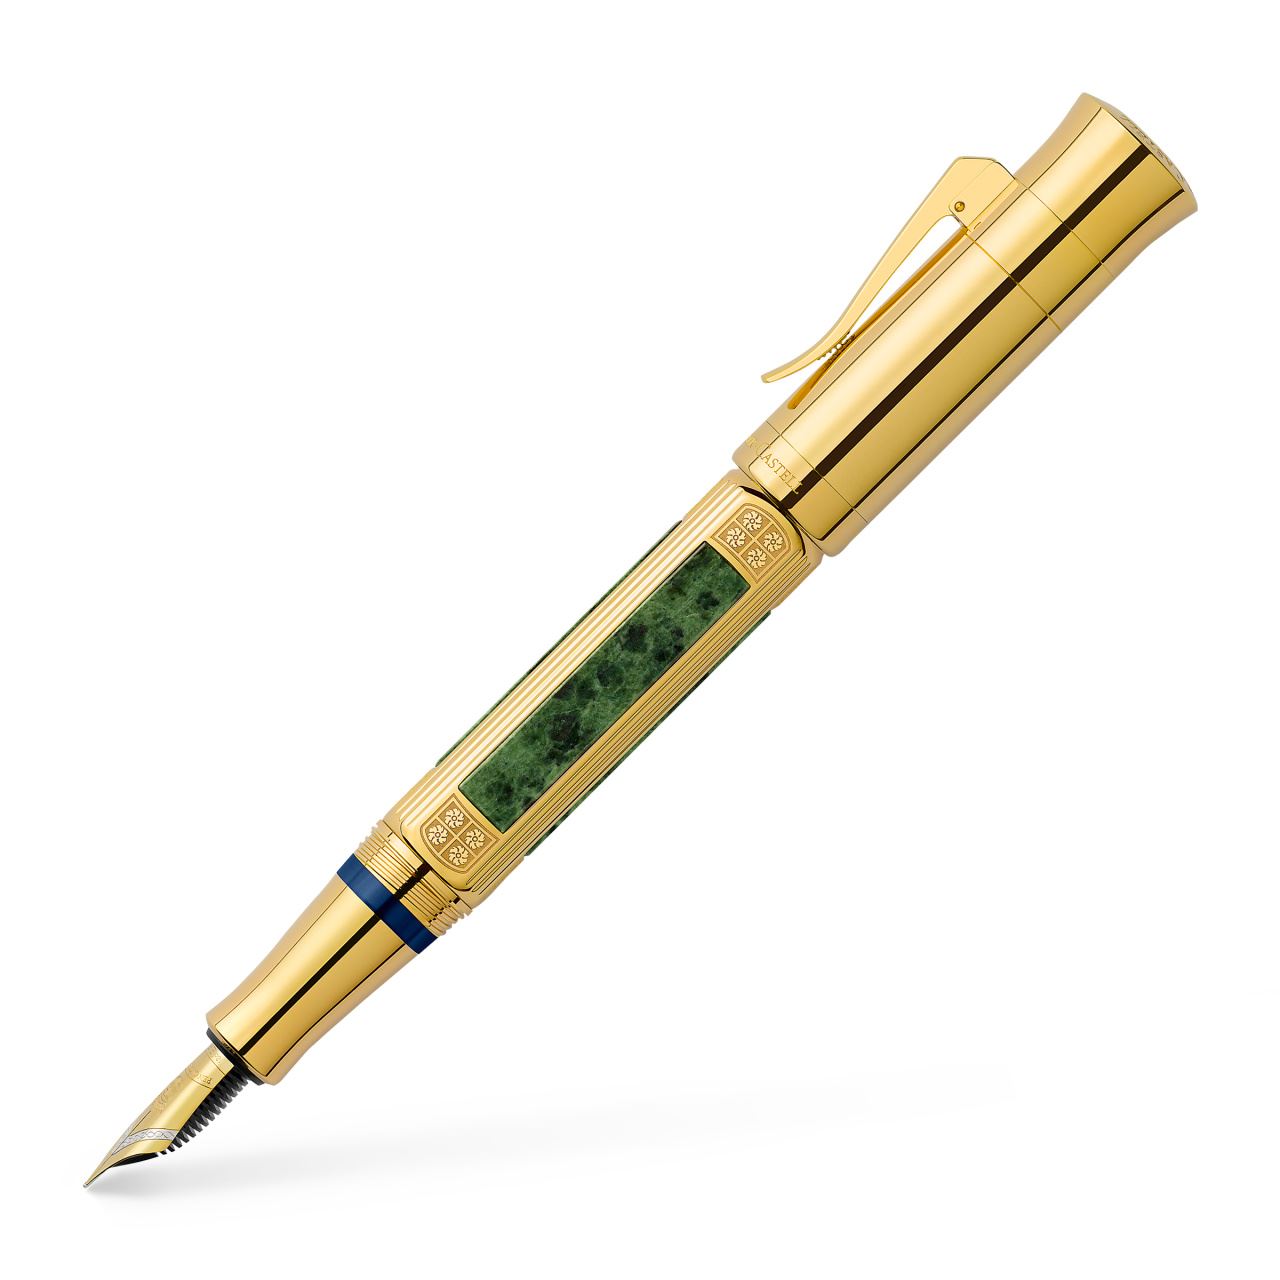 Graf-von-Faber-Castell - Penna stilografica Pen of the year 2015 Edizione Speciale L.